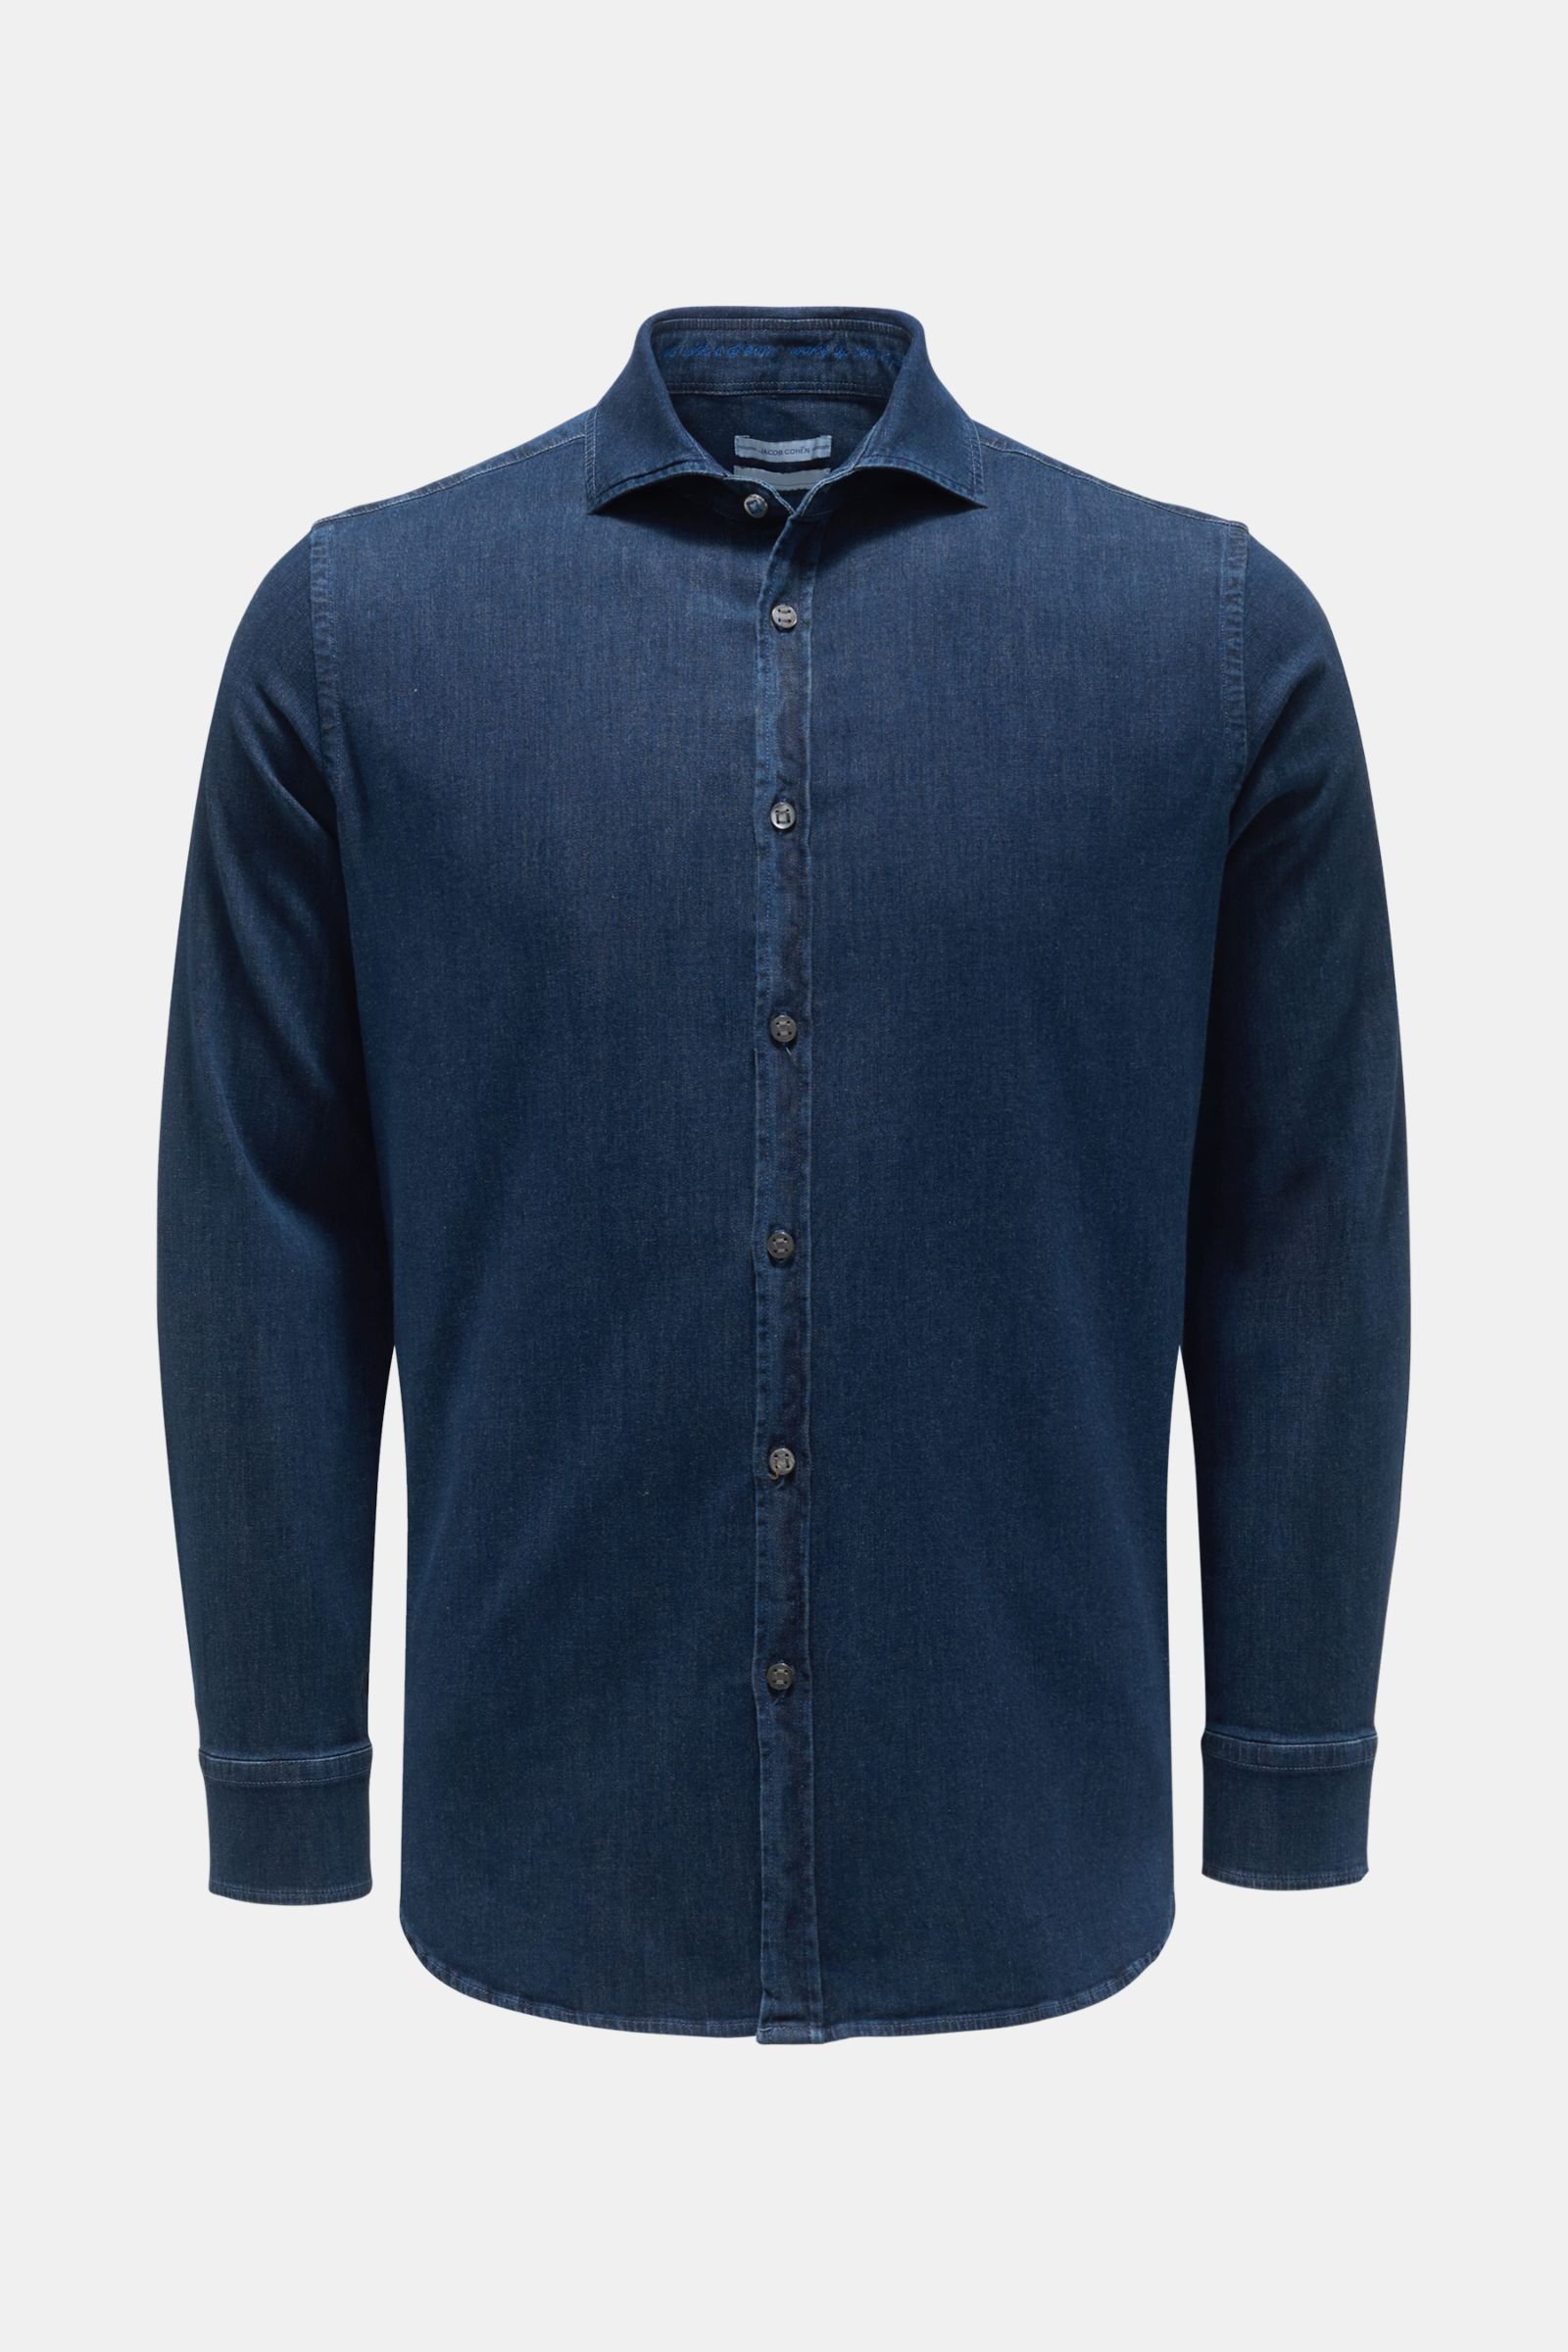 Denim shirt 'J8066' slim collar dark blue